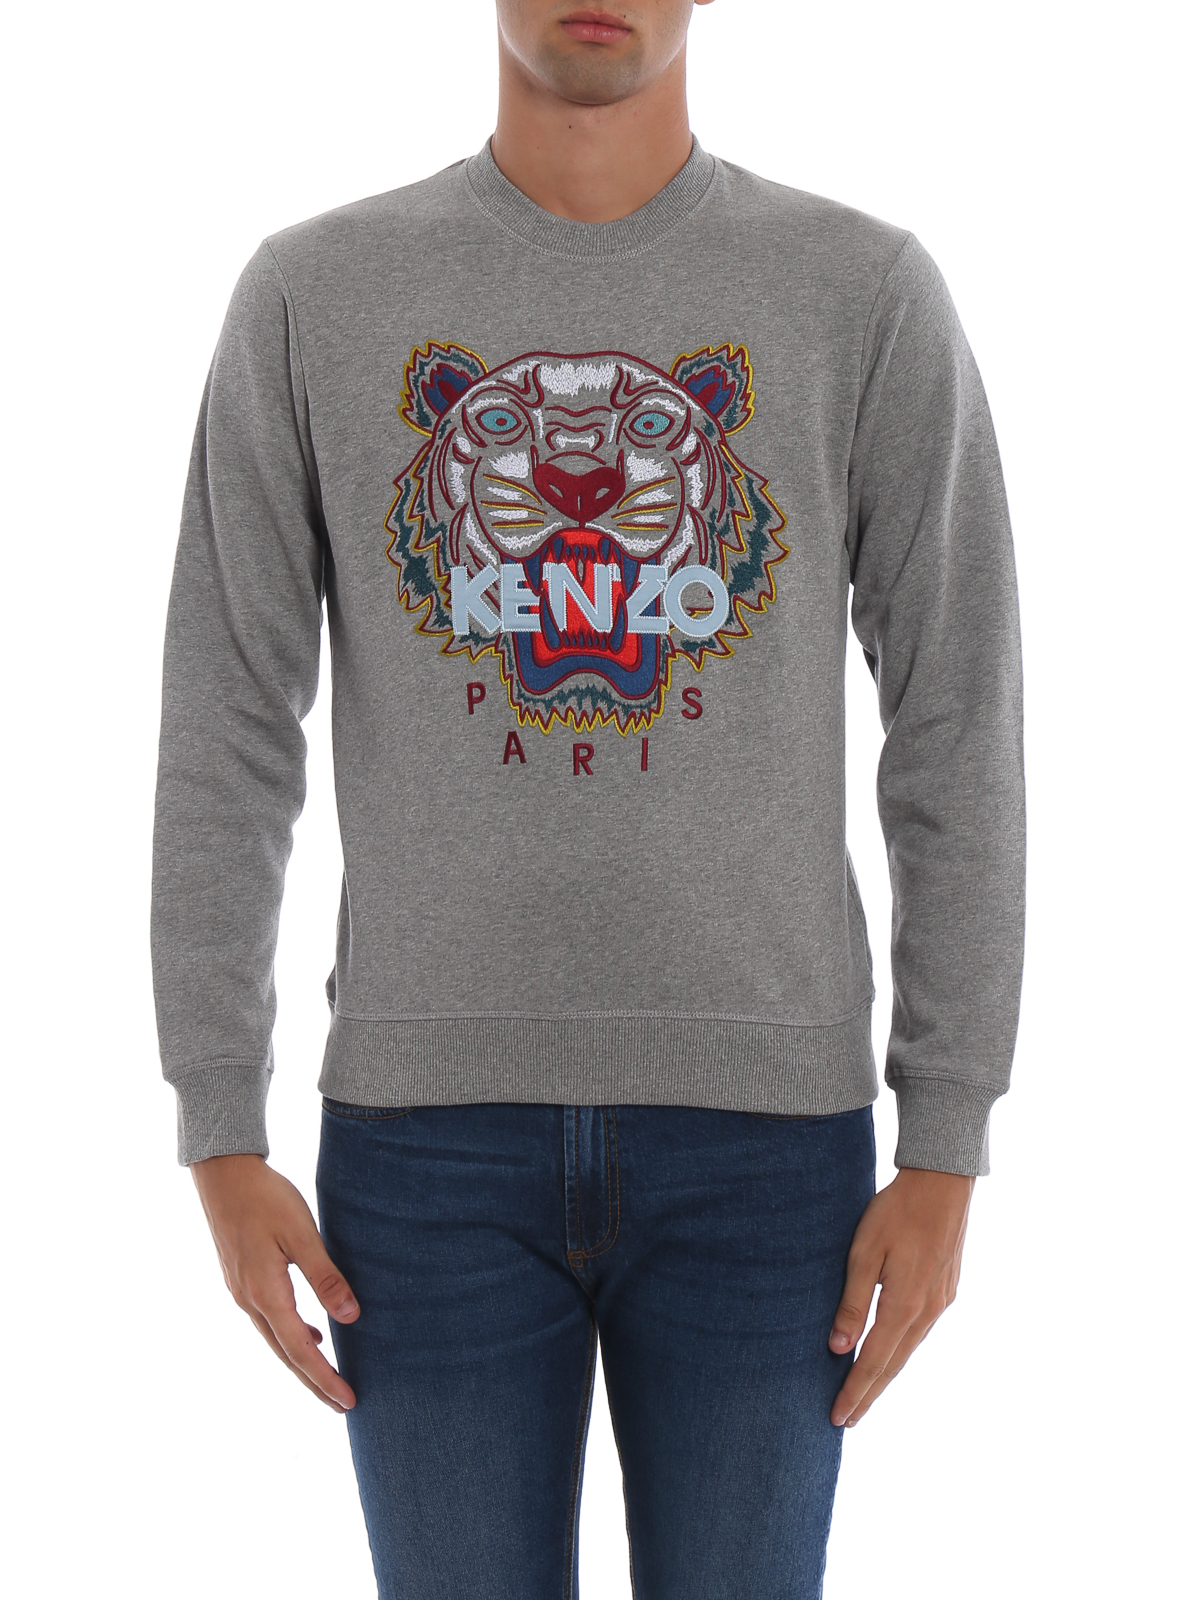 kenzo gray sweater